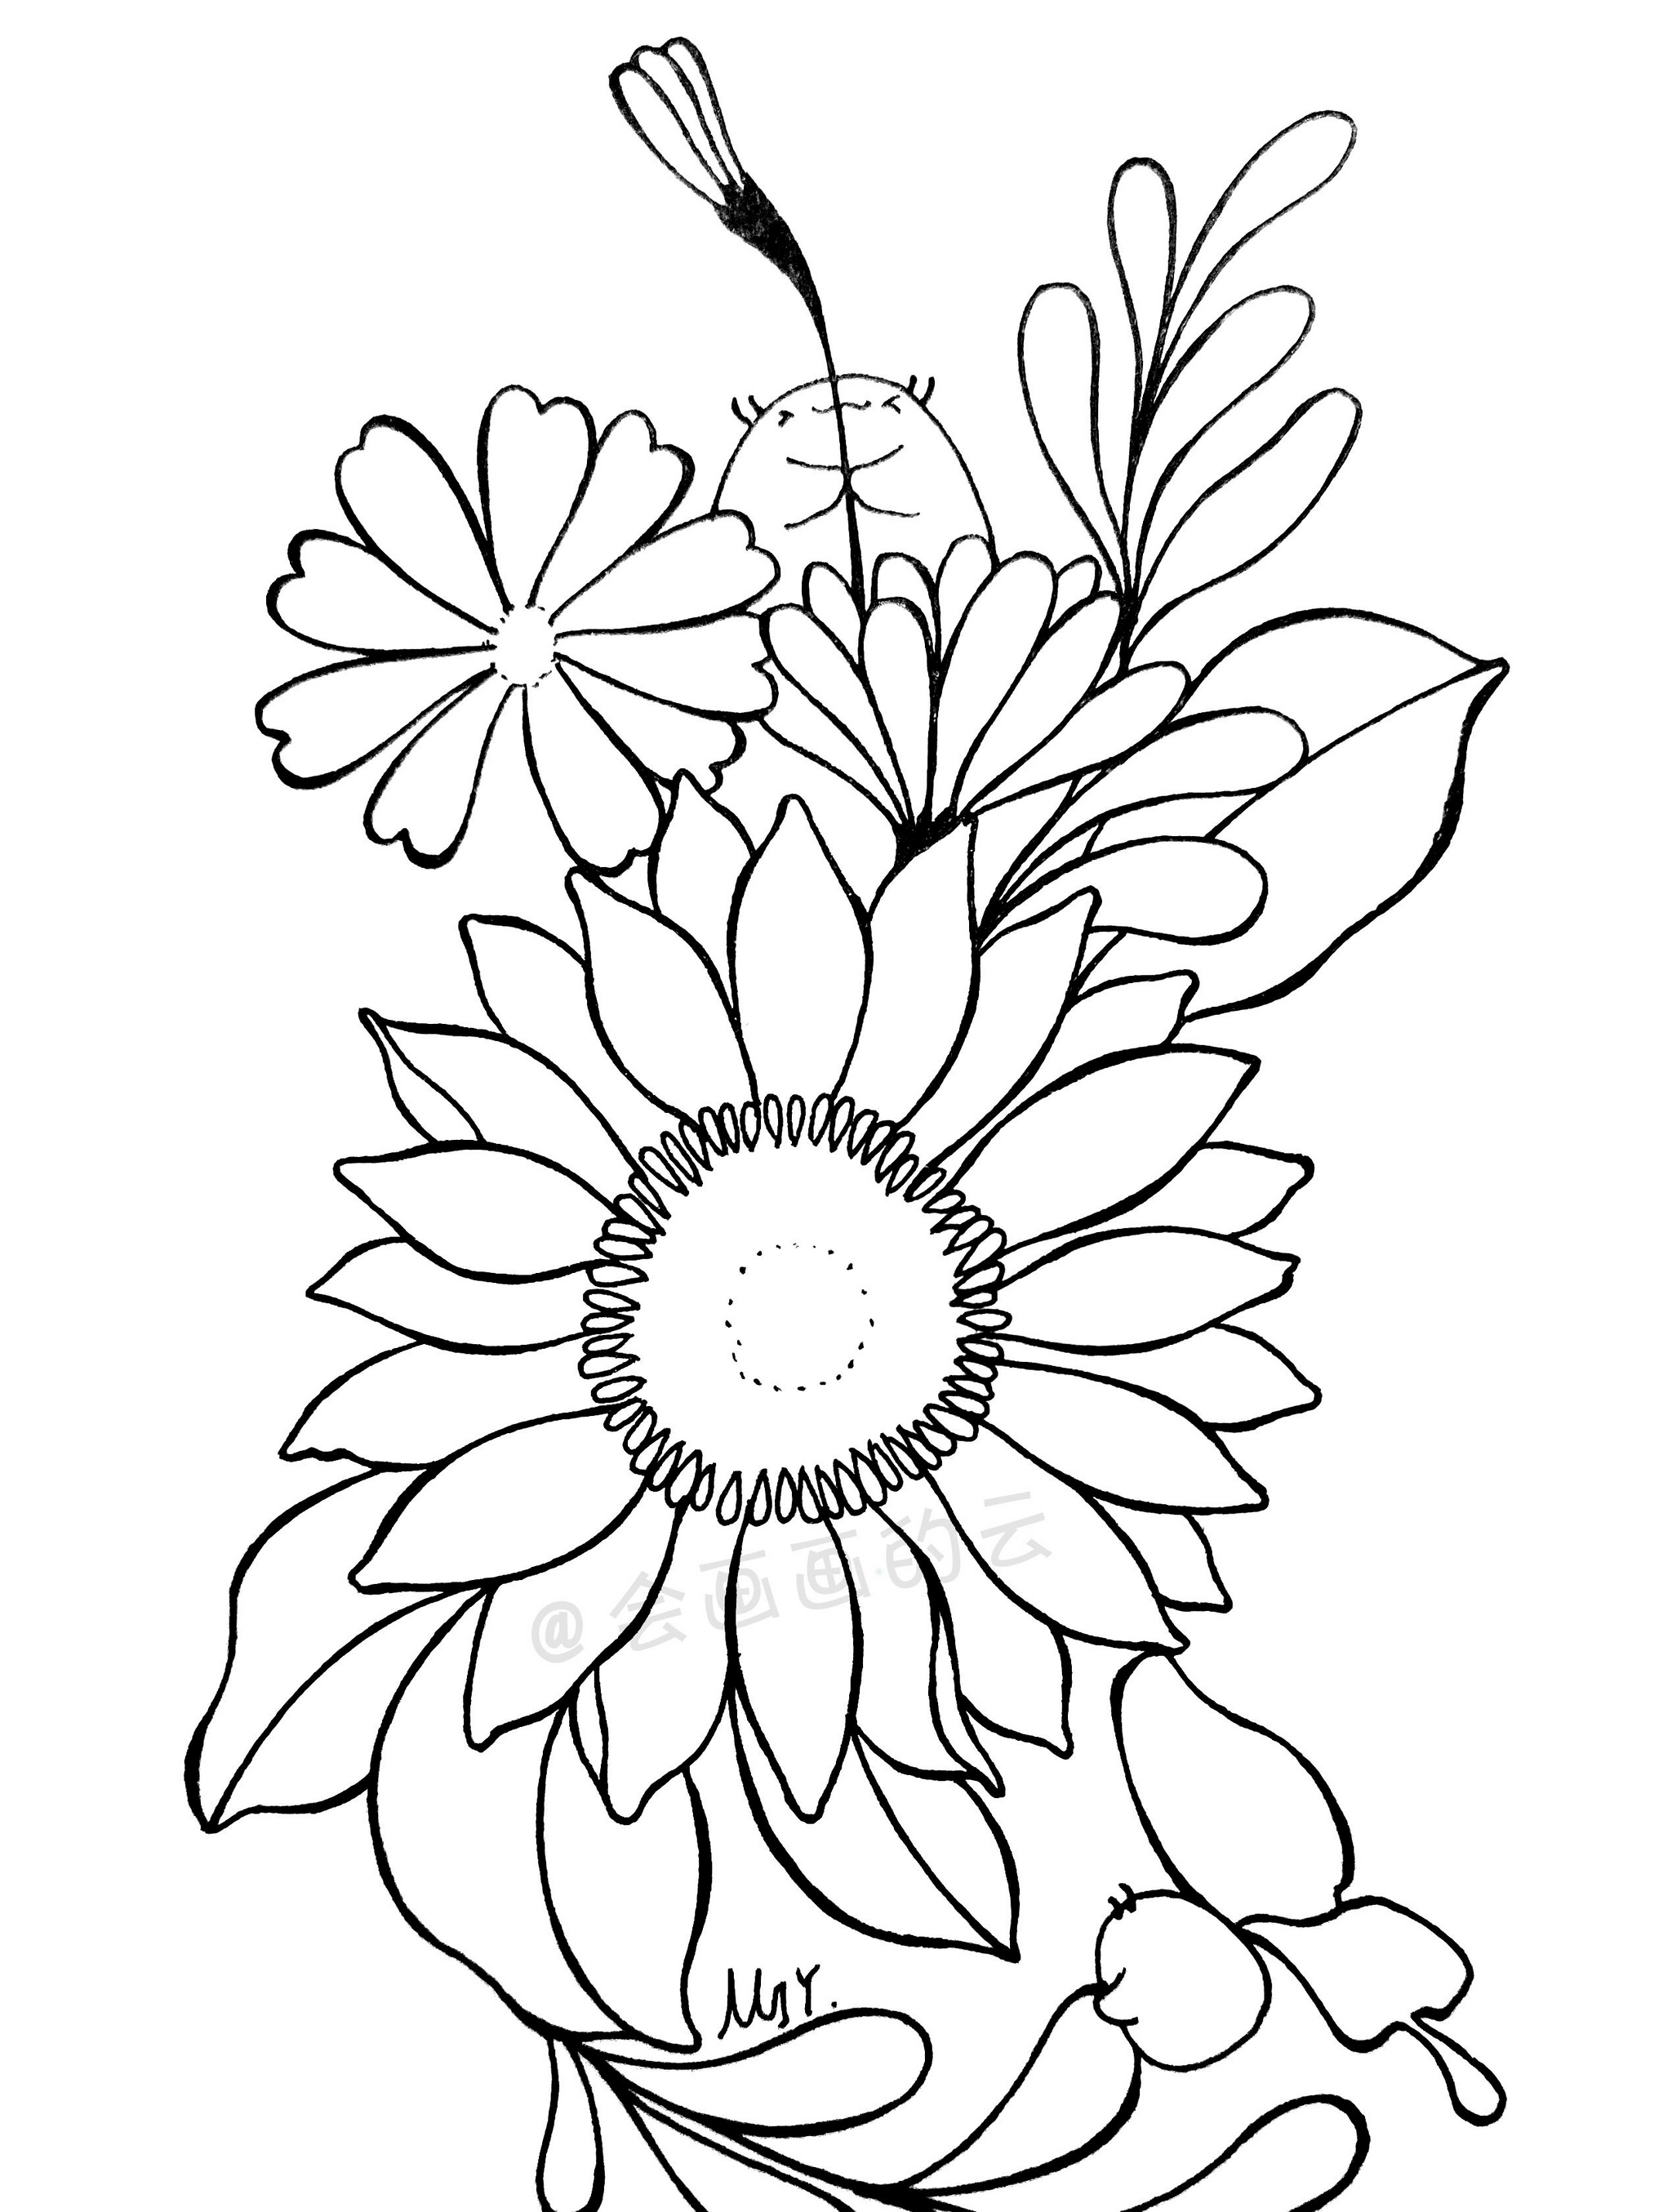 最常见的工具画出好看的花朵,零基础也可以画的简笔画